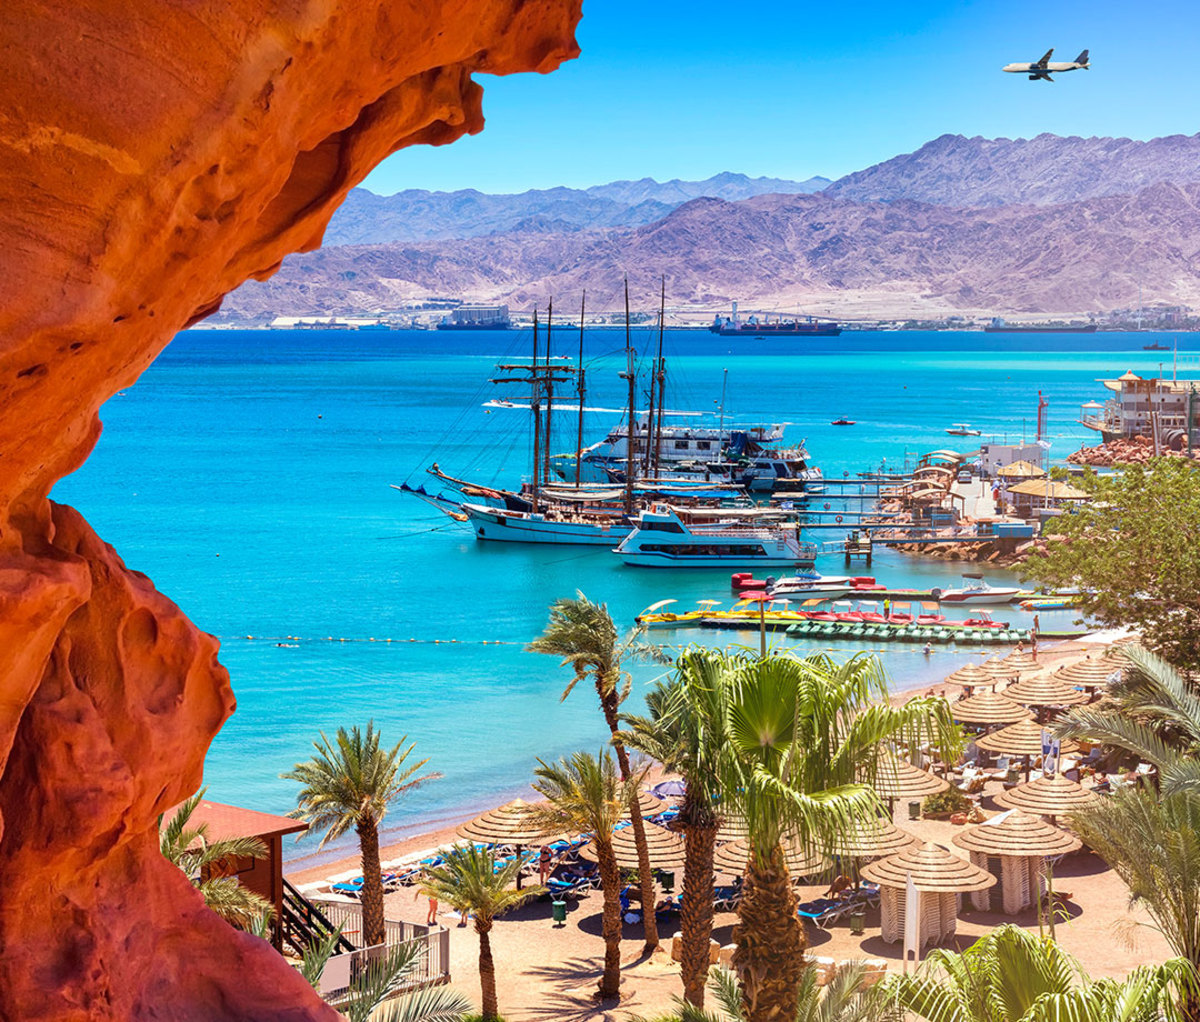 Aqaba, Jordan, 4-Day Travel Guide: to Eat,